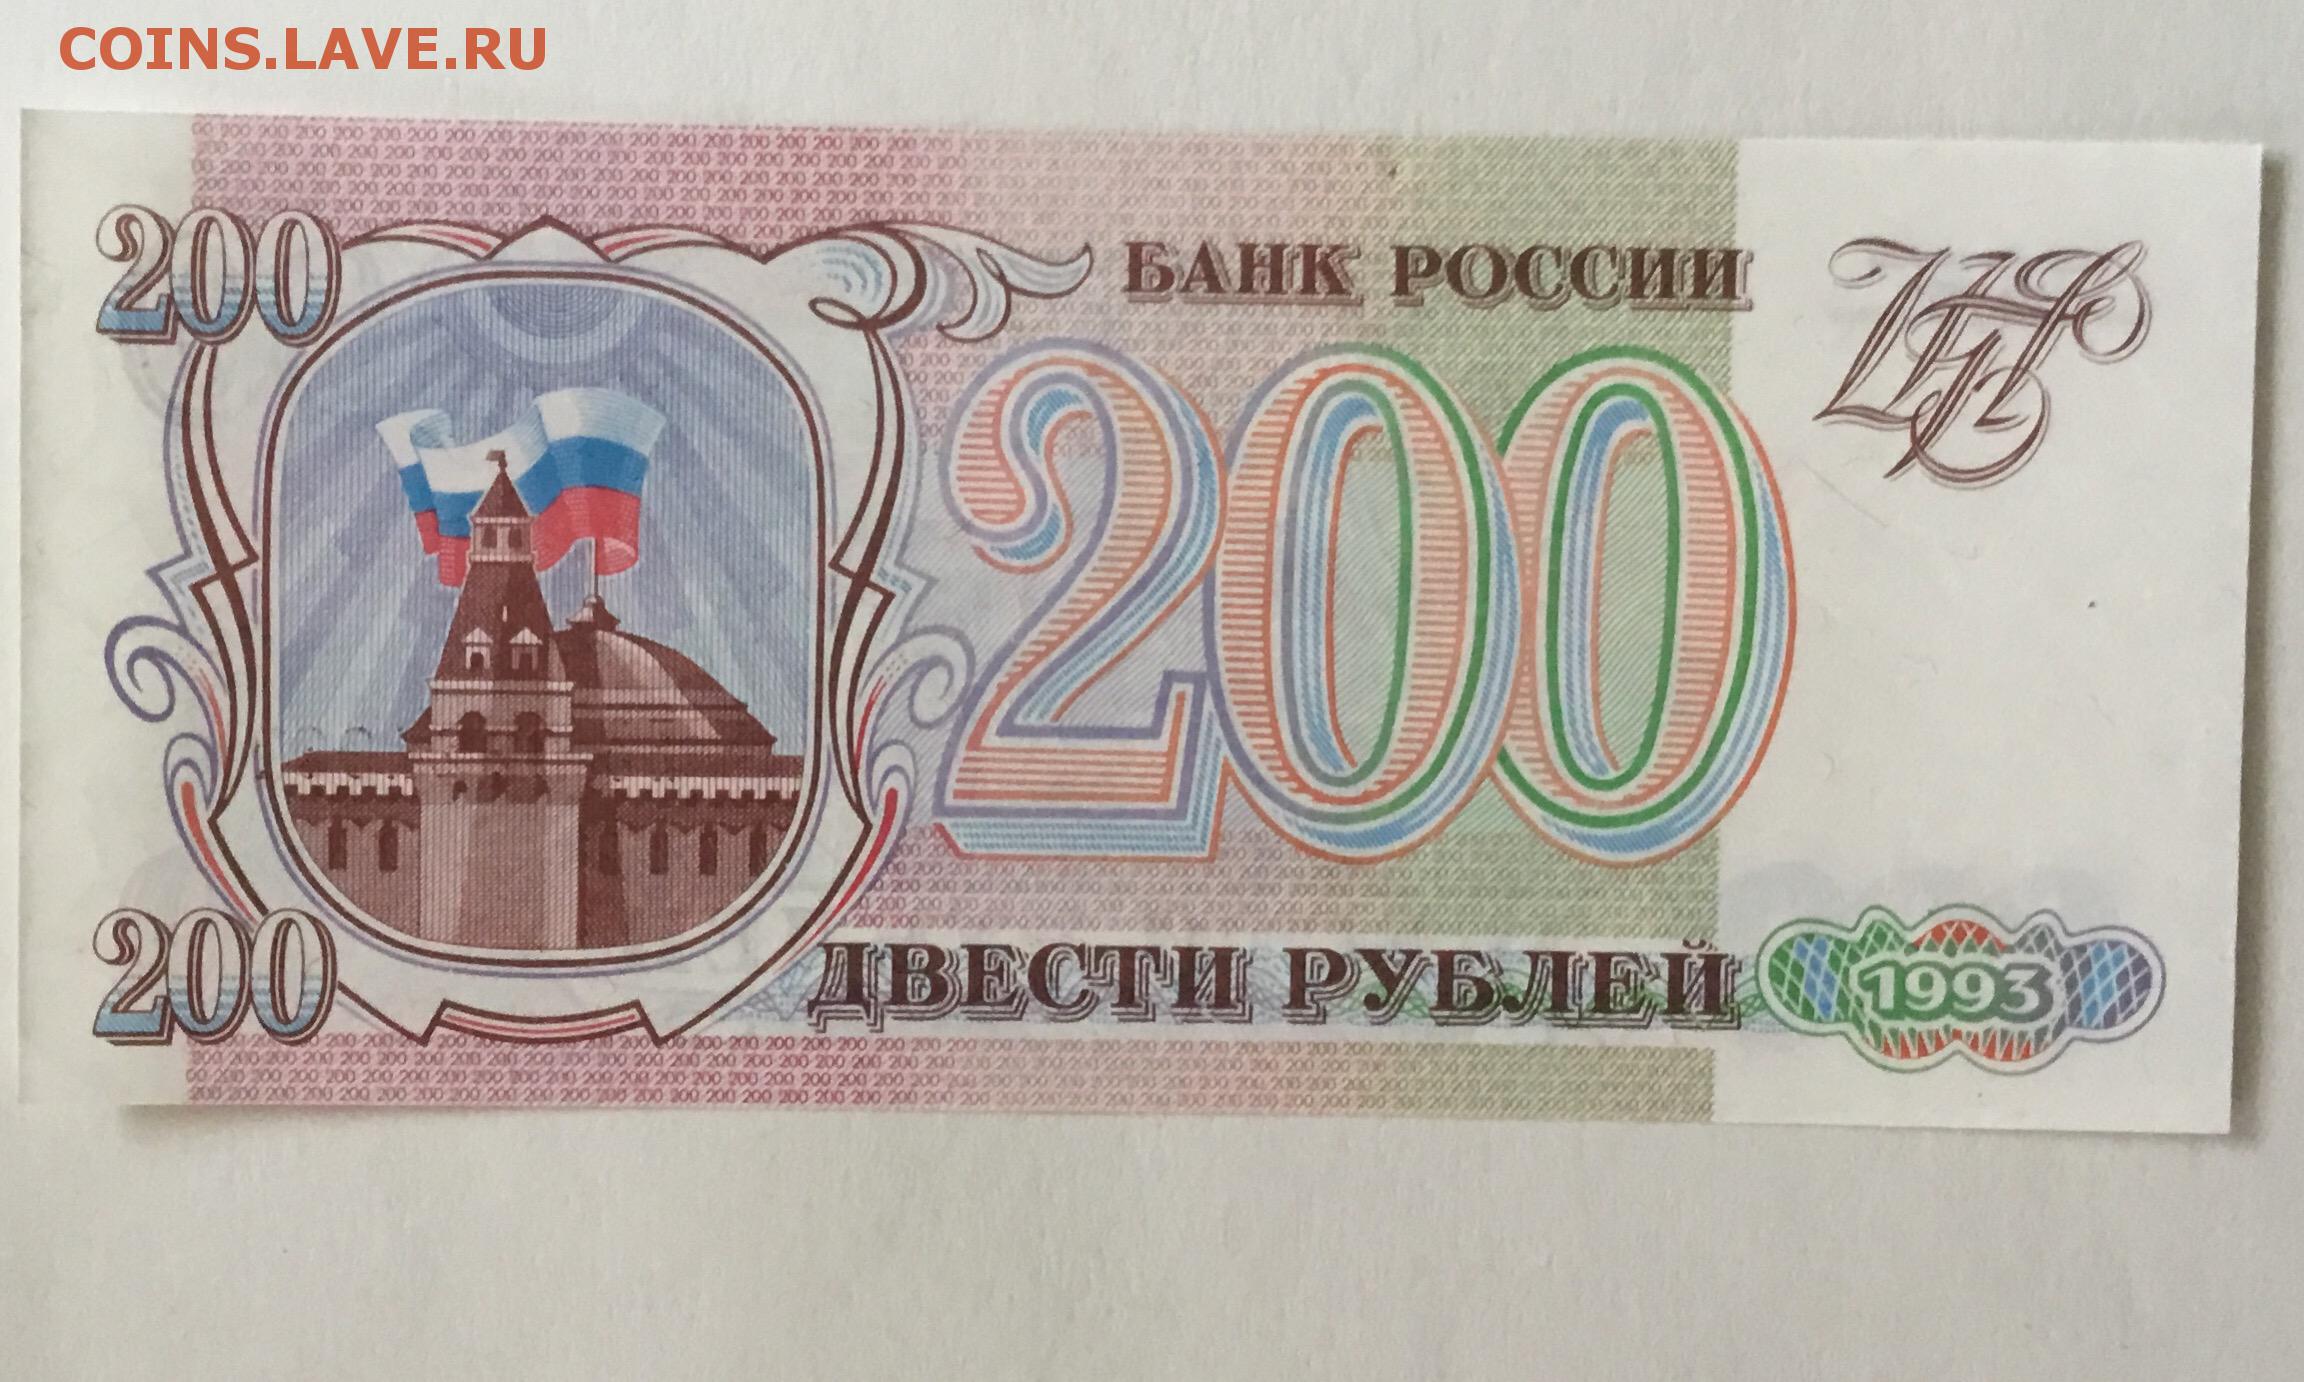 5 от 200 рублей. Купюра 200 рублей 1993. 200 Рублей 1993 года. Двести рублей 1993. Банкнота 200 рублей 1993.